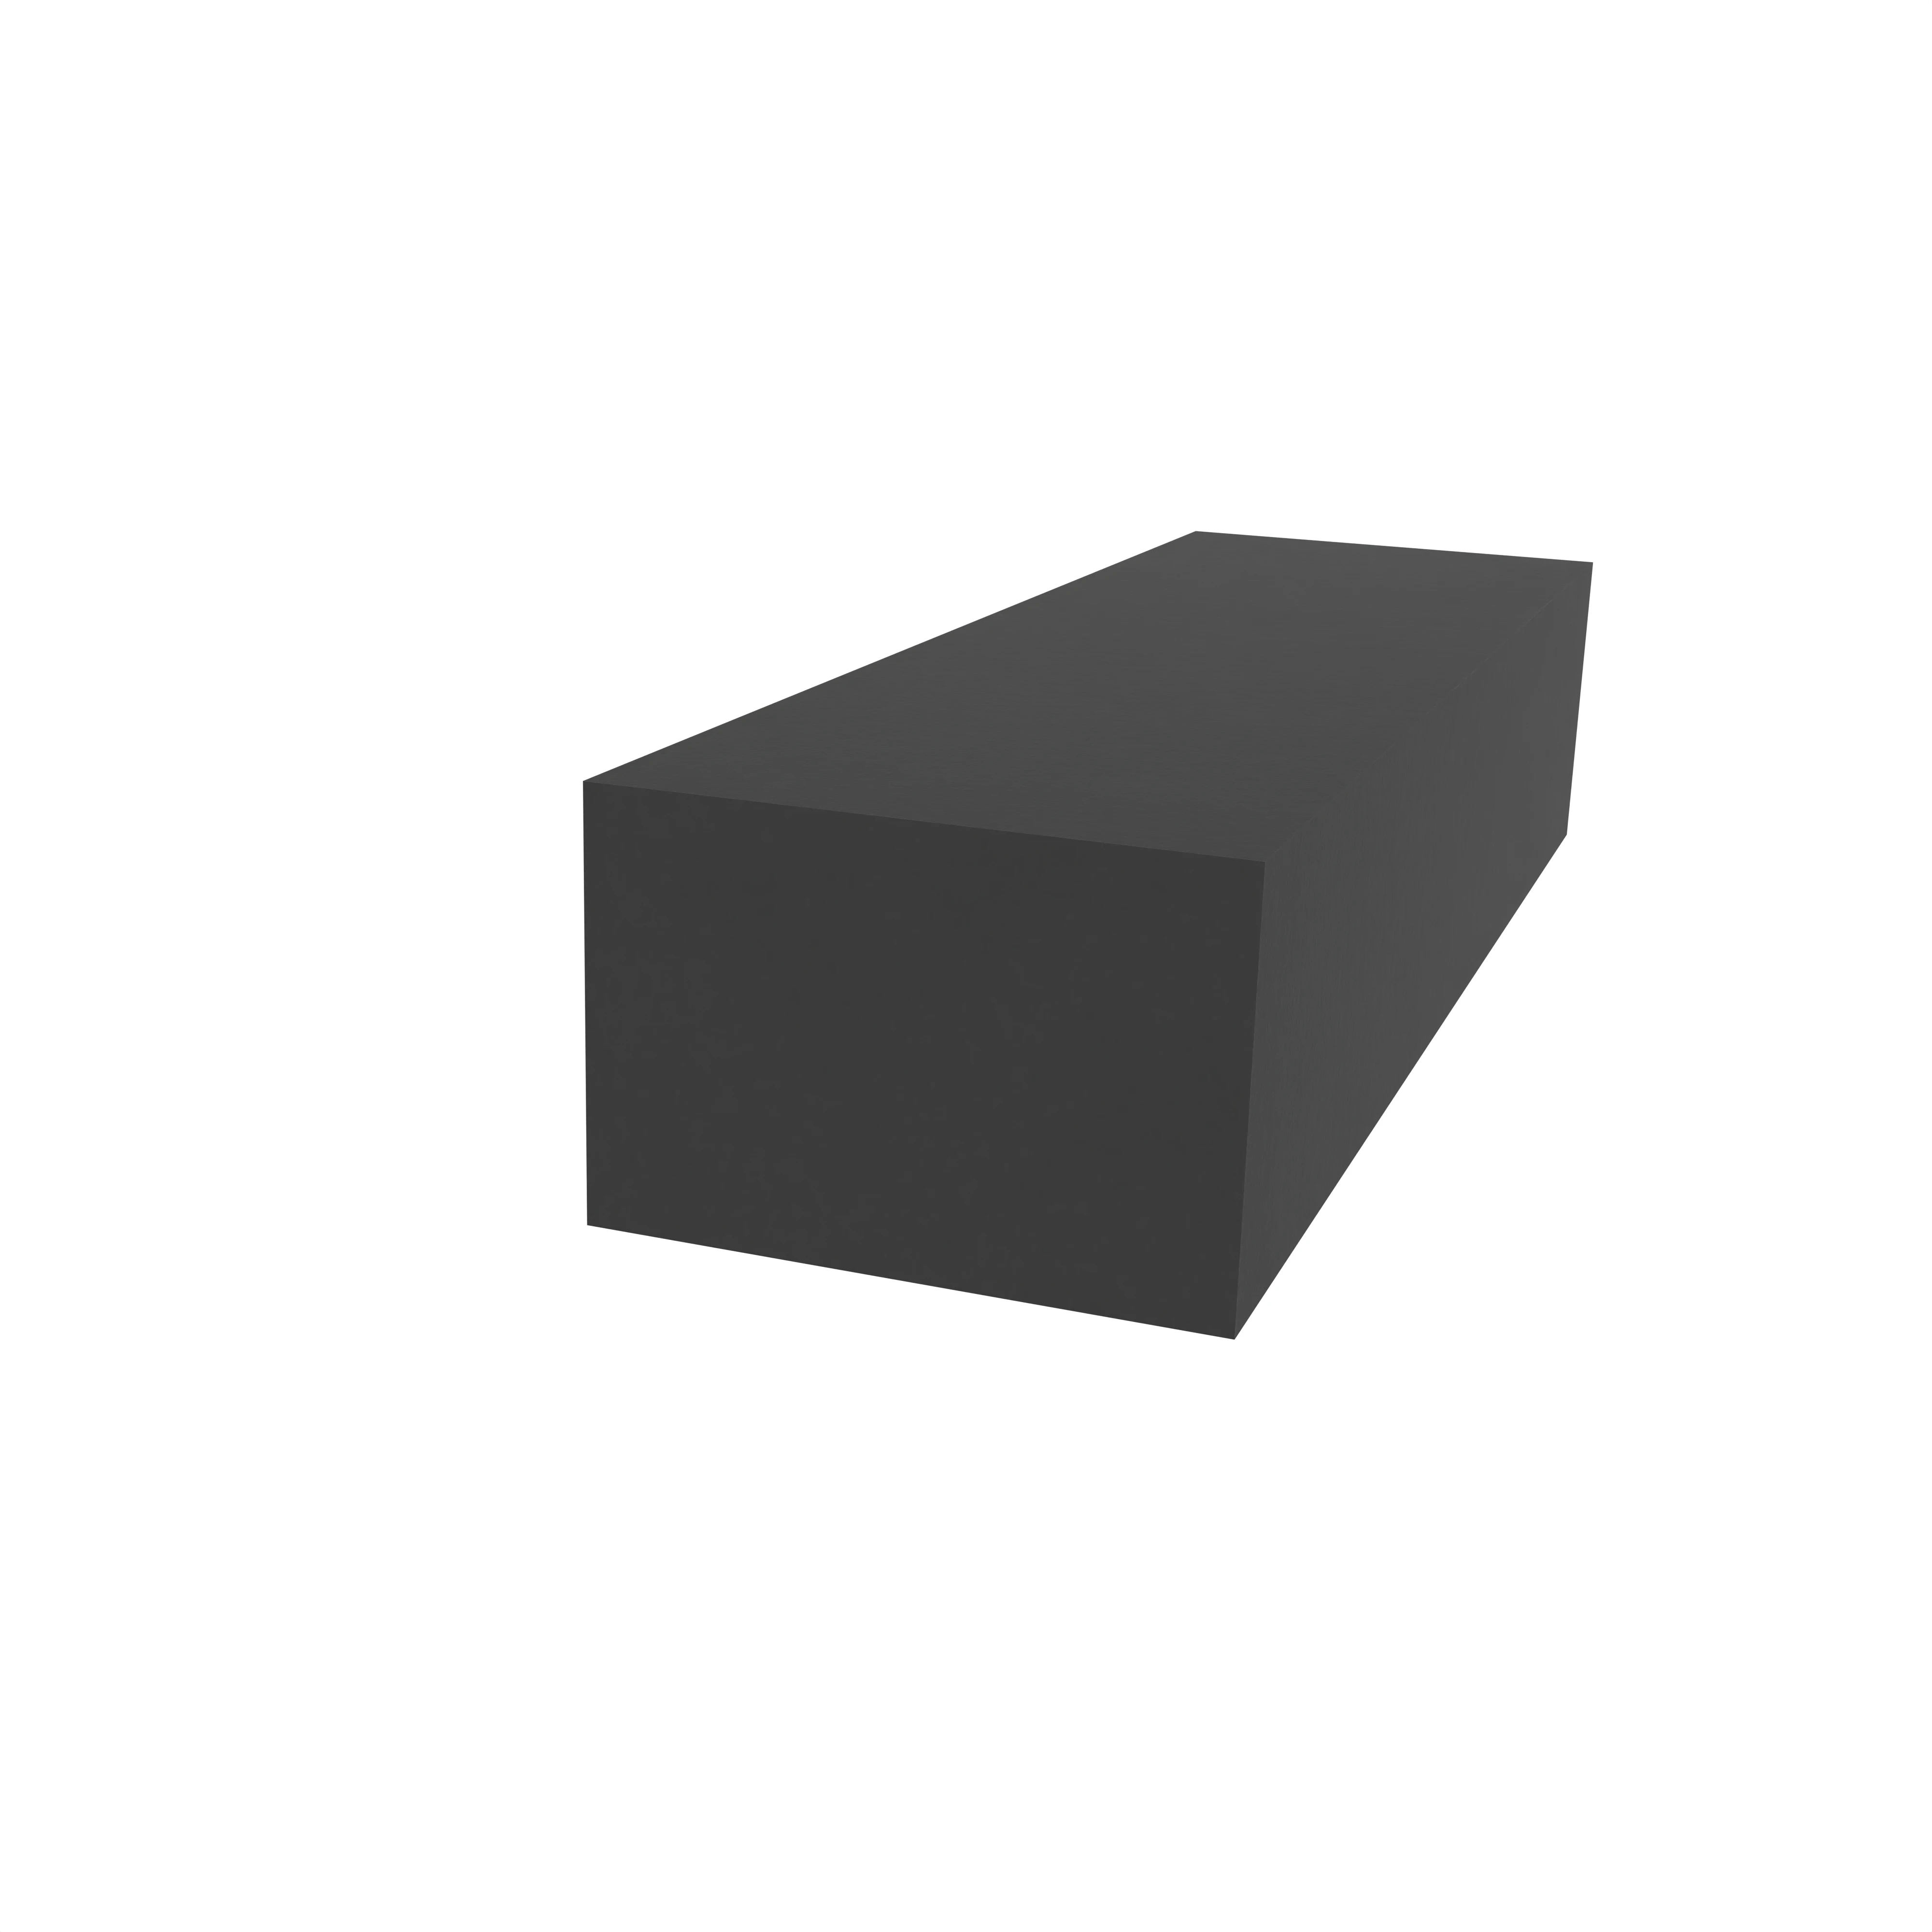 Moosgummidichtung vierkant | 12 mm Breite | Farbe: schwarz